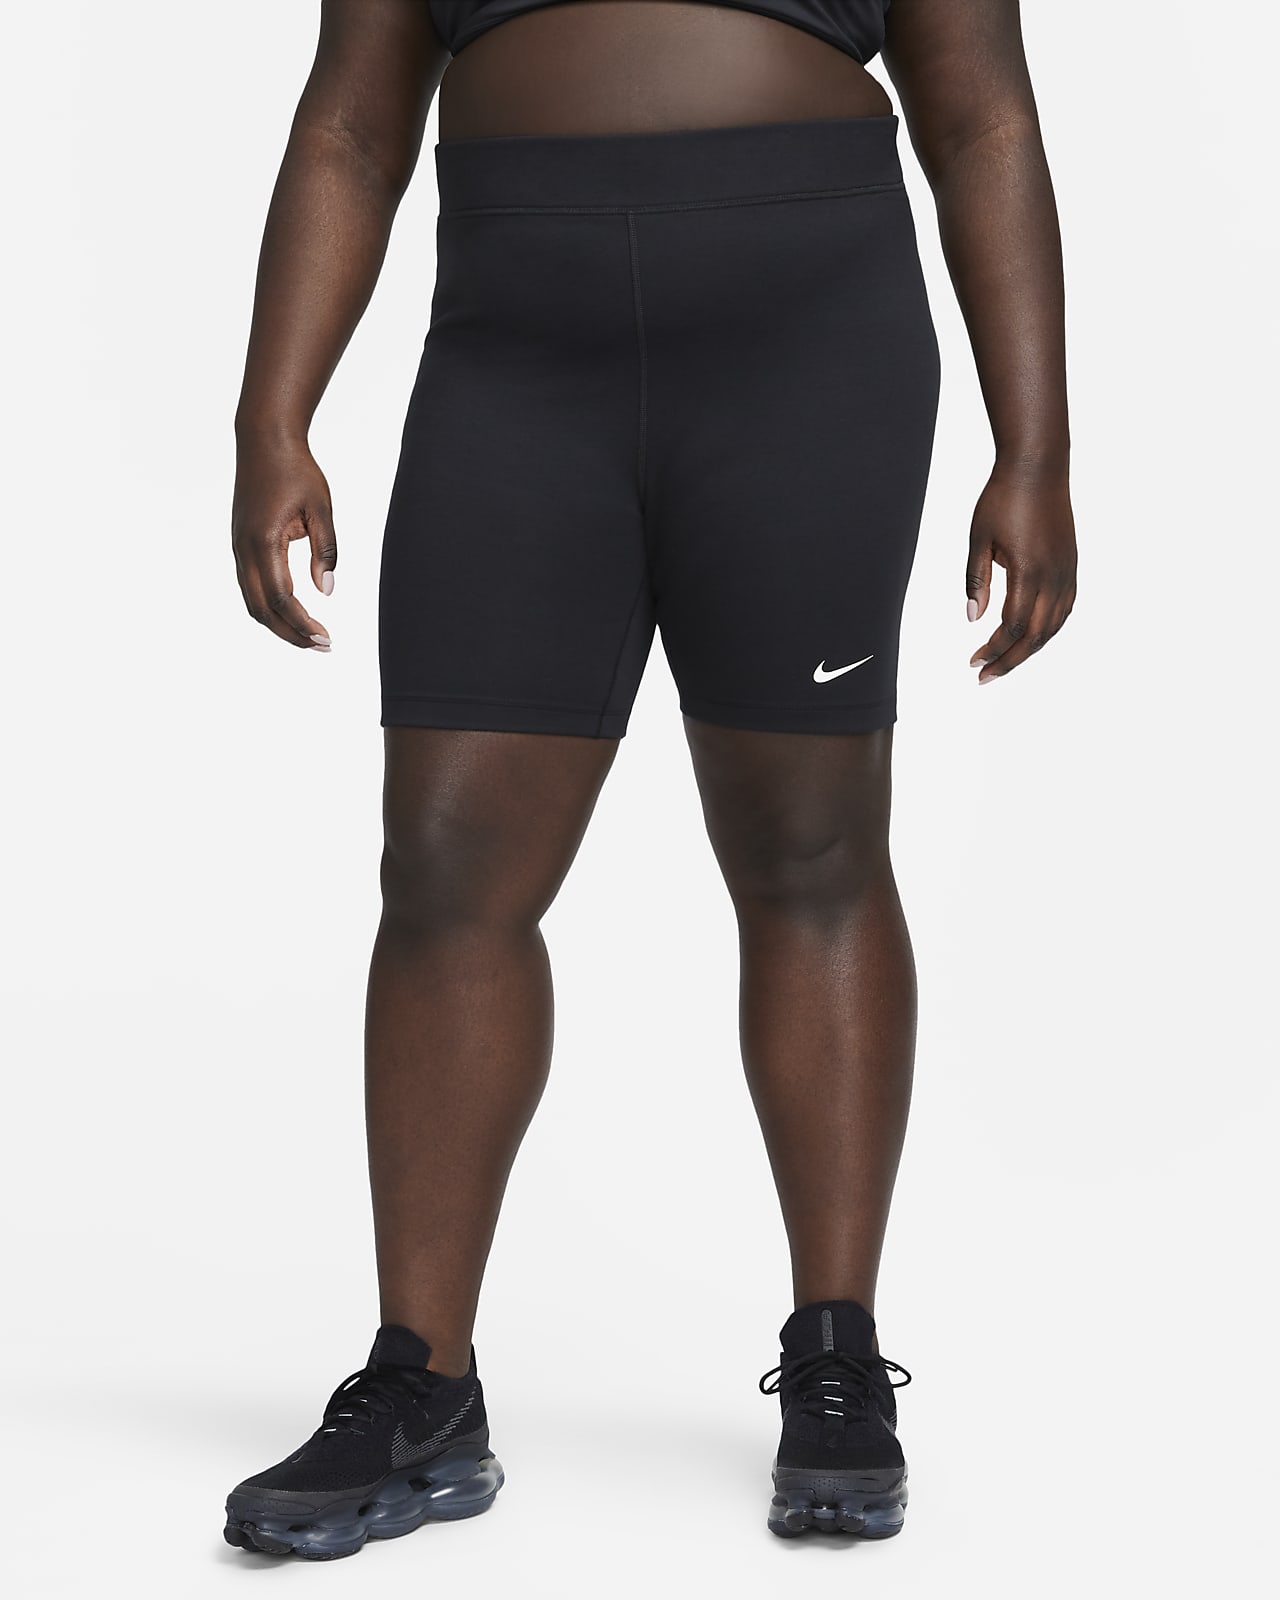 Γυναικείο ψηλόμεσο σορτς ποδηλασίας Nike Sportswear Classic 20 cm (μεγάλα μεγέθη)